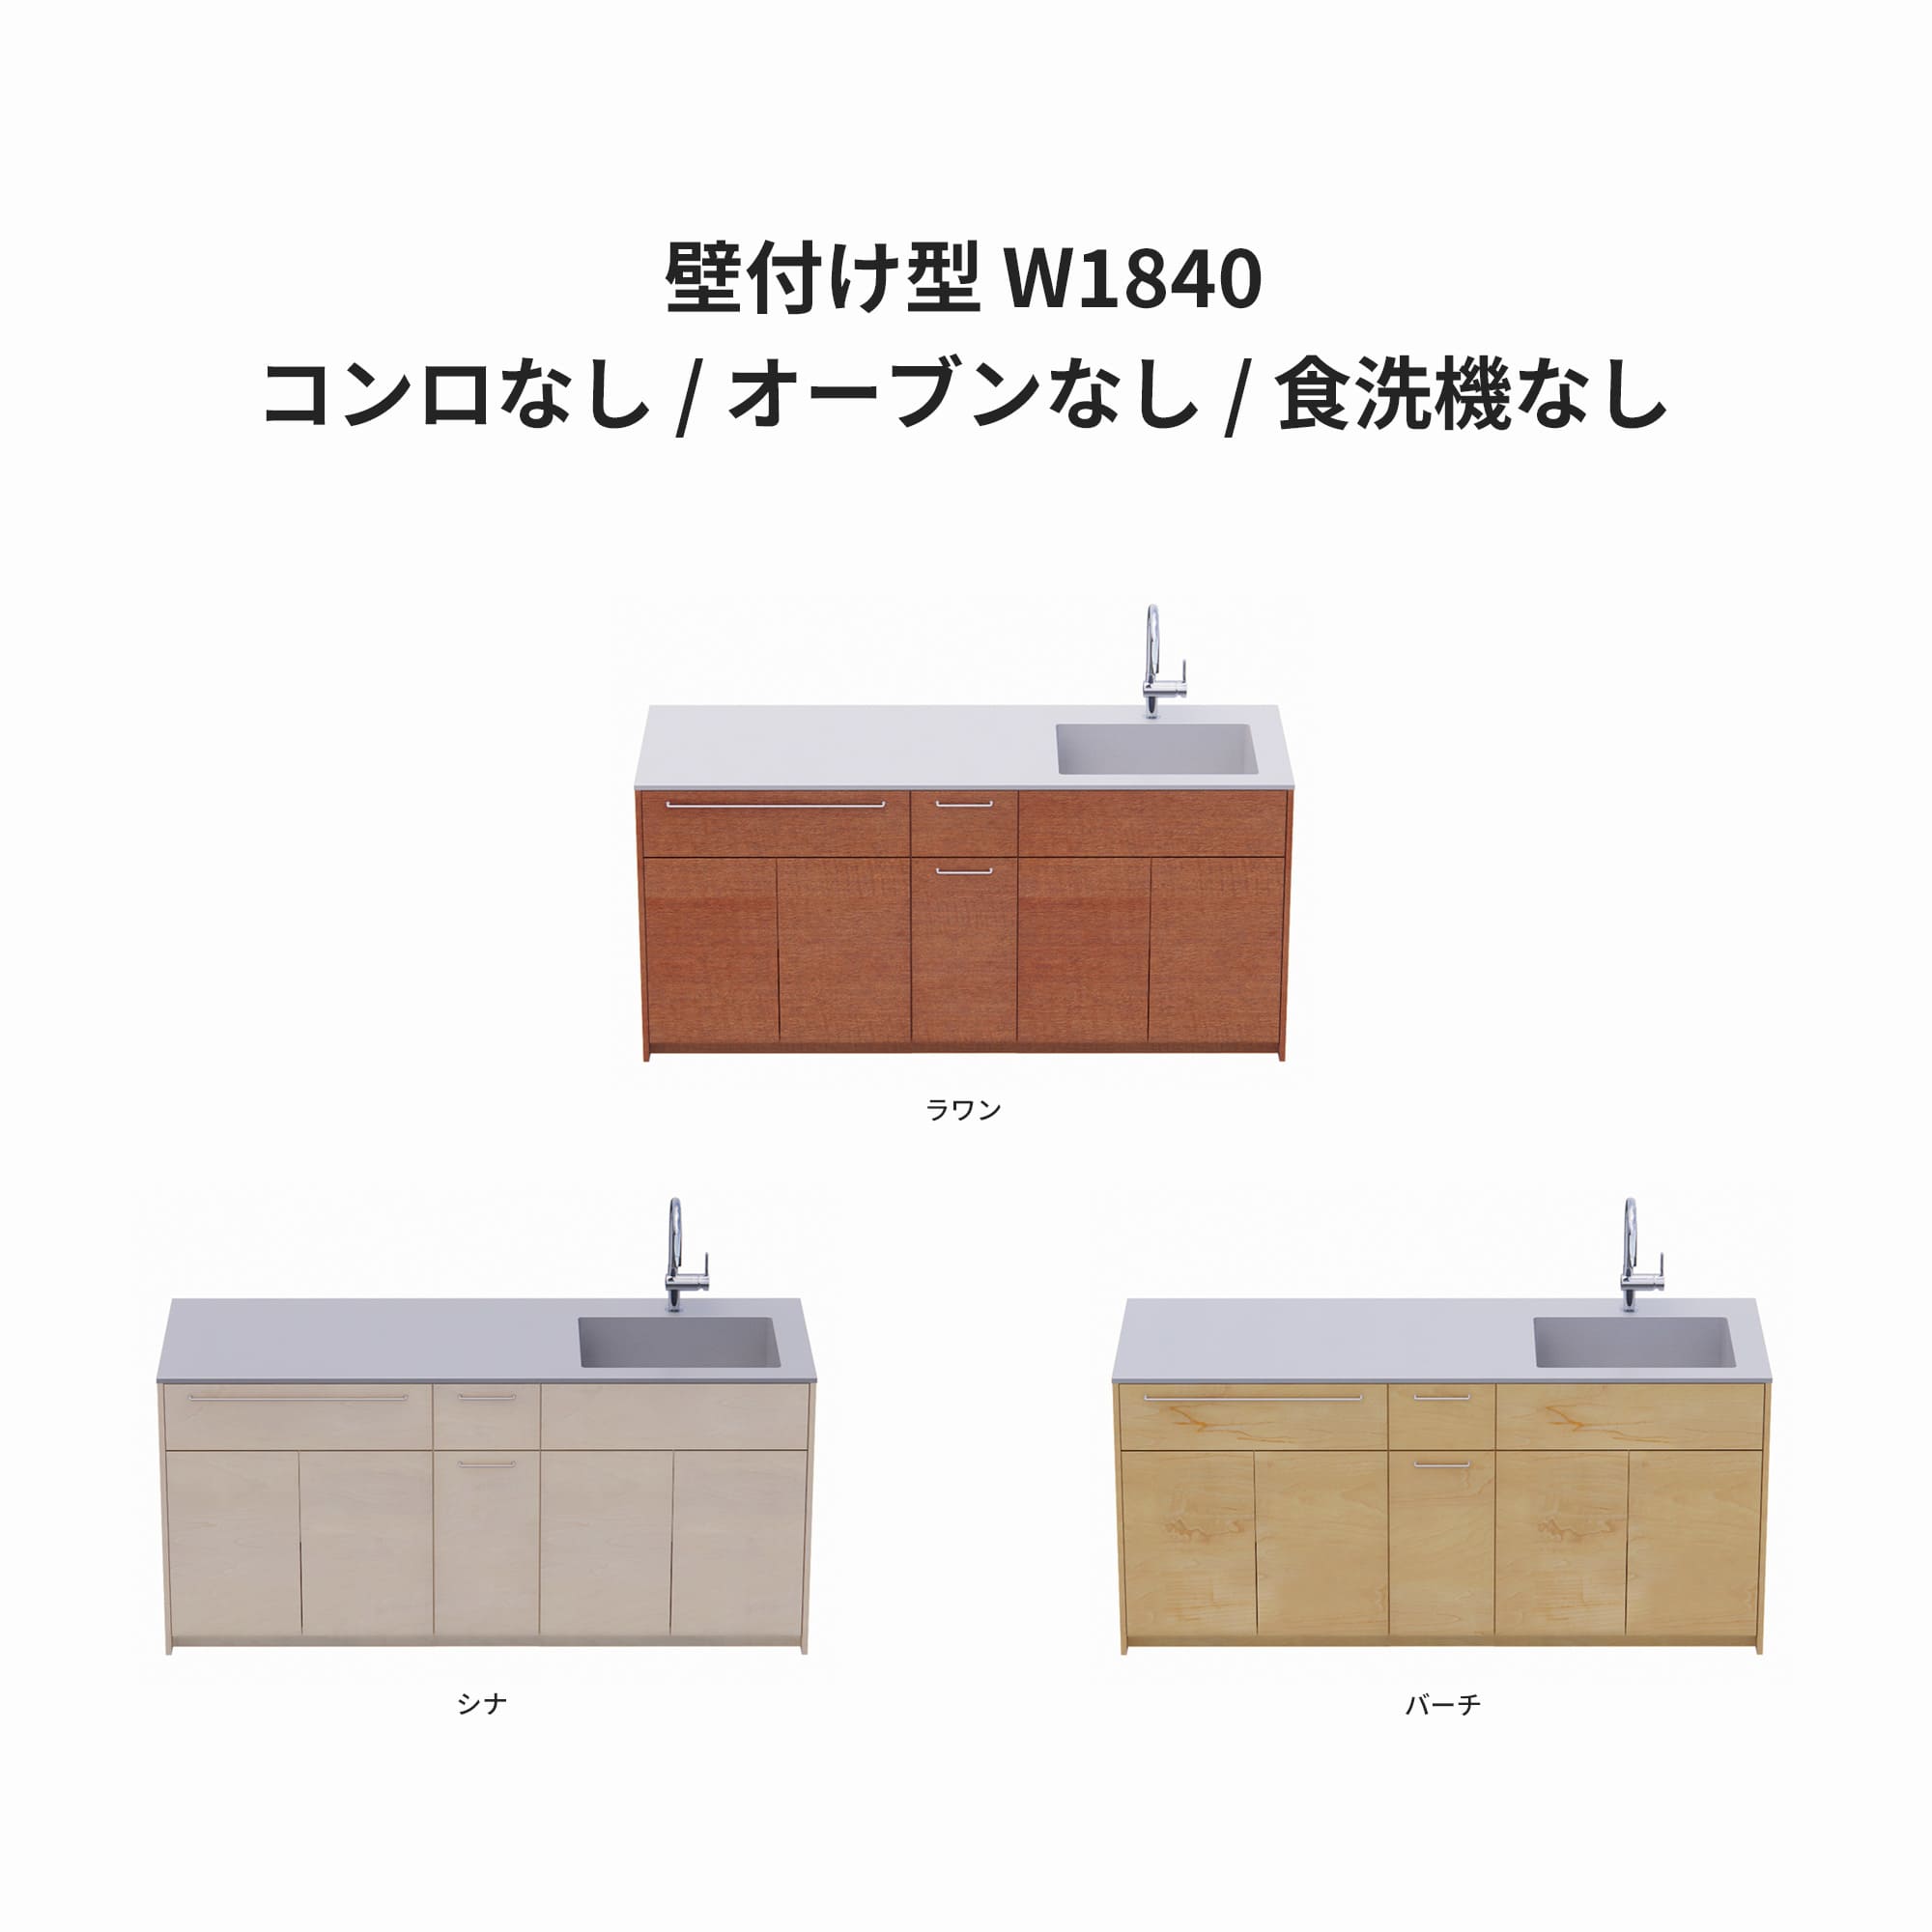 木製システムキッチン 壁付け型 W1840・コンロなし / オーブンなし / 食洗機なし KB-KC022-12-G183 ラワン・シナ・バーチが選択できます